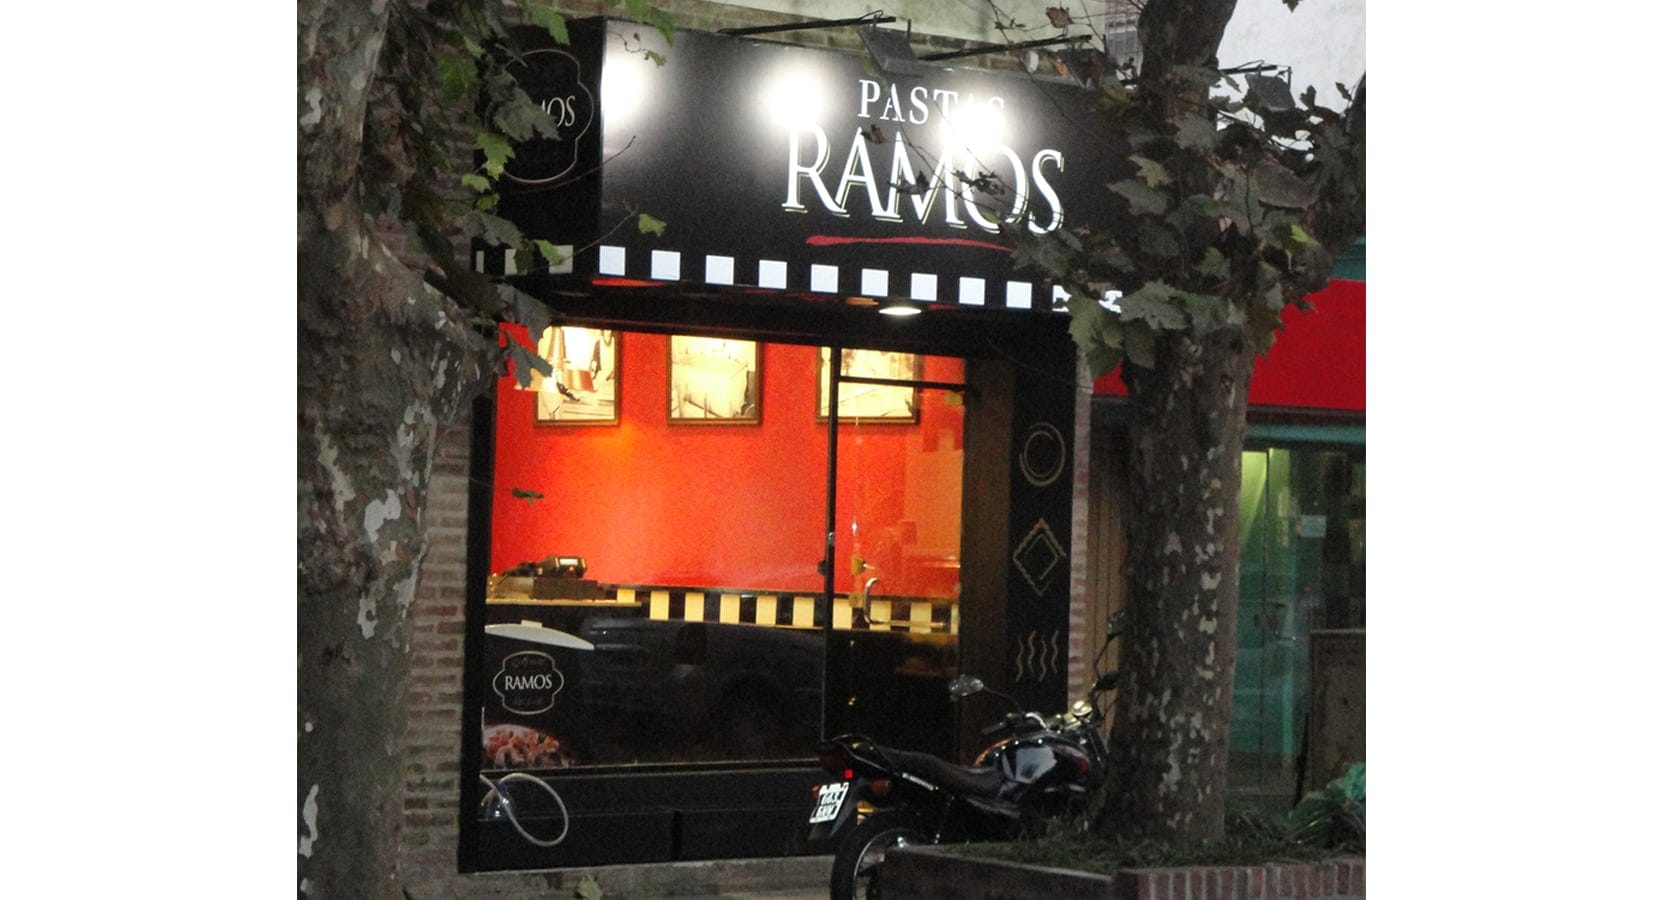 2013. Pastas Ramos 2